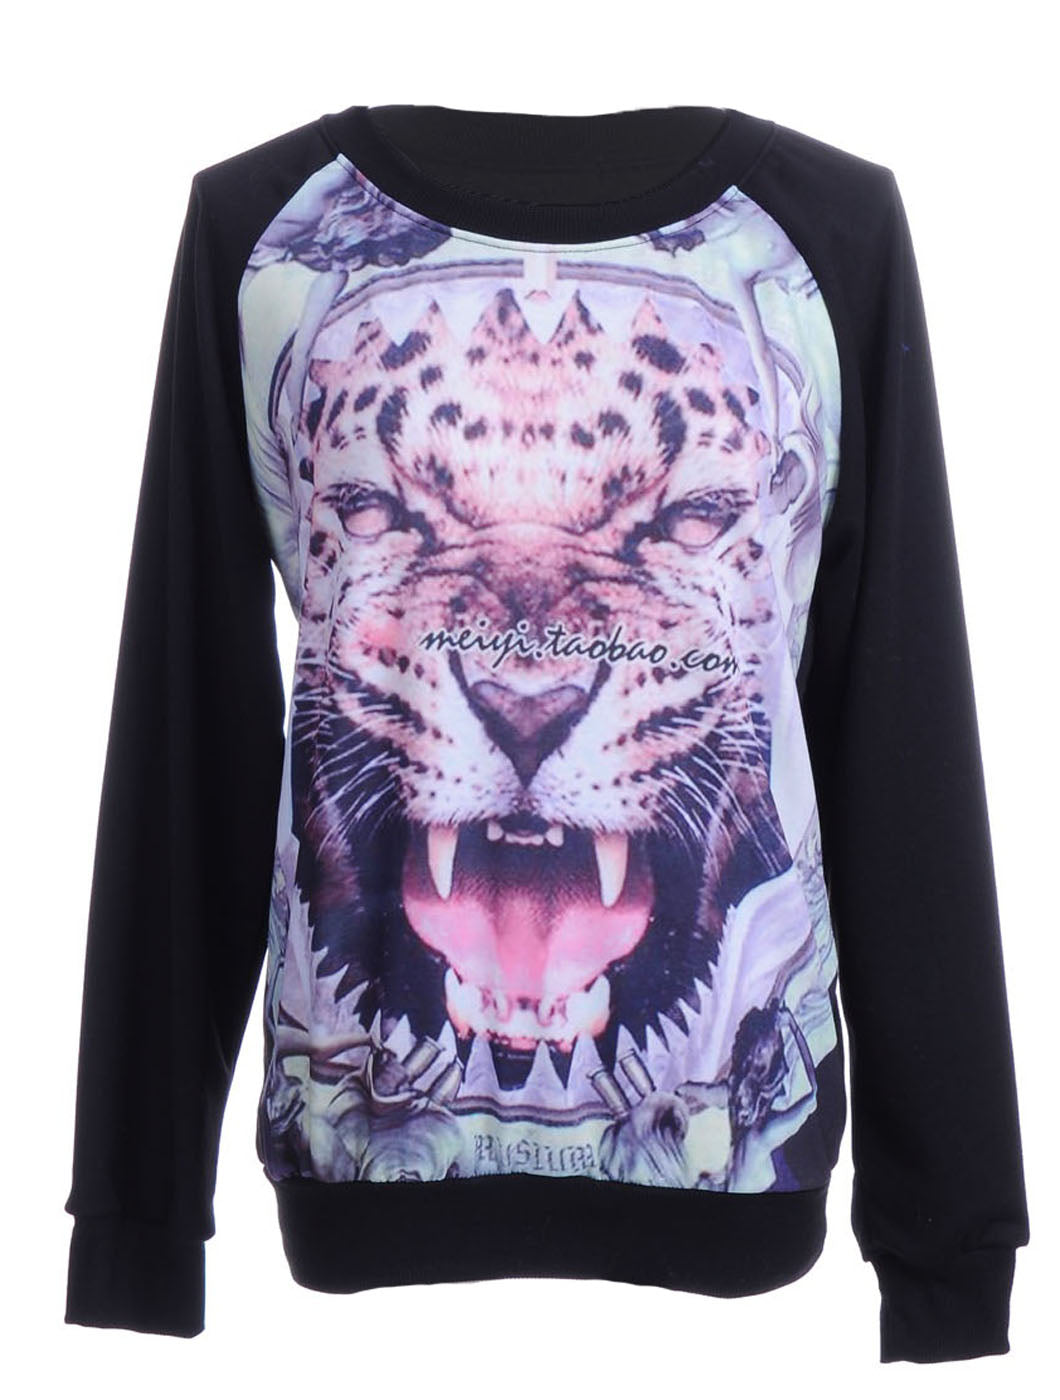 S/M Fit Black Fierce Tiger Hear It Roar Front Print Pullover Sweater